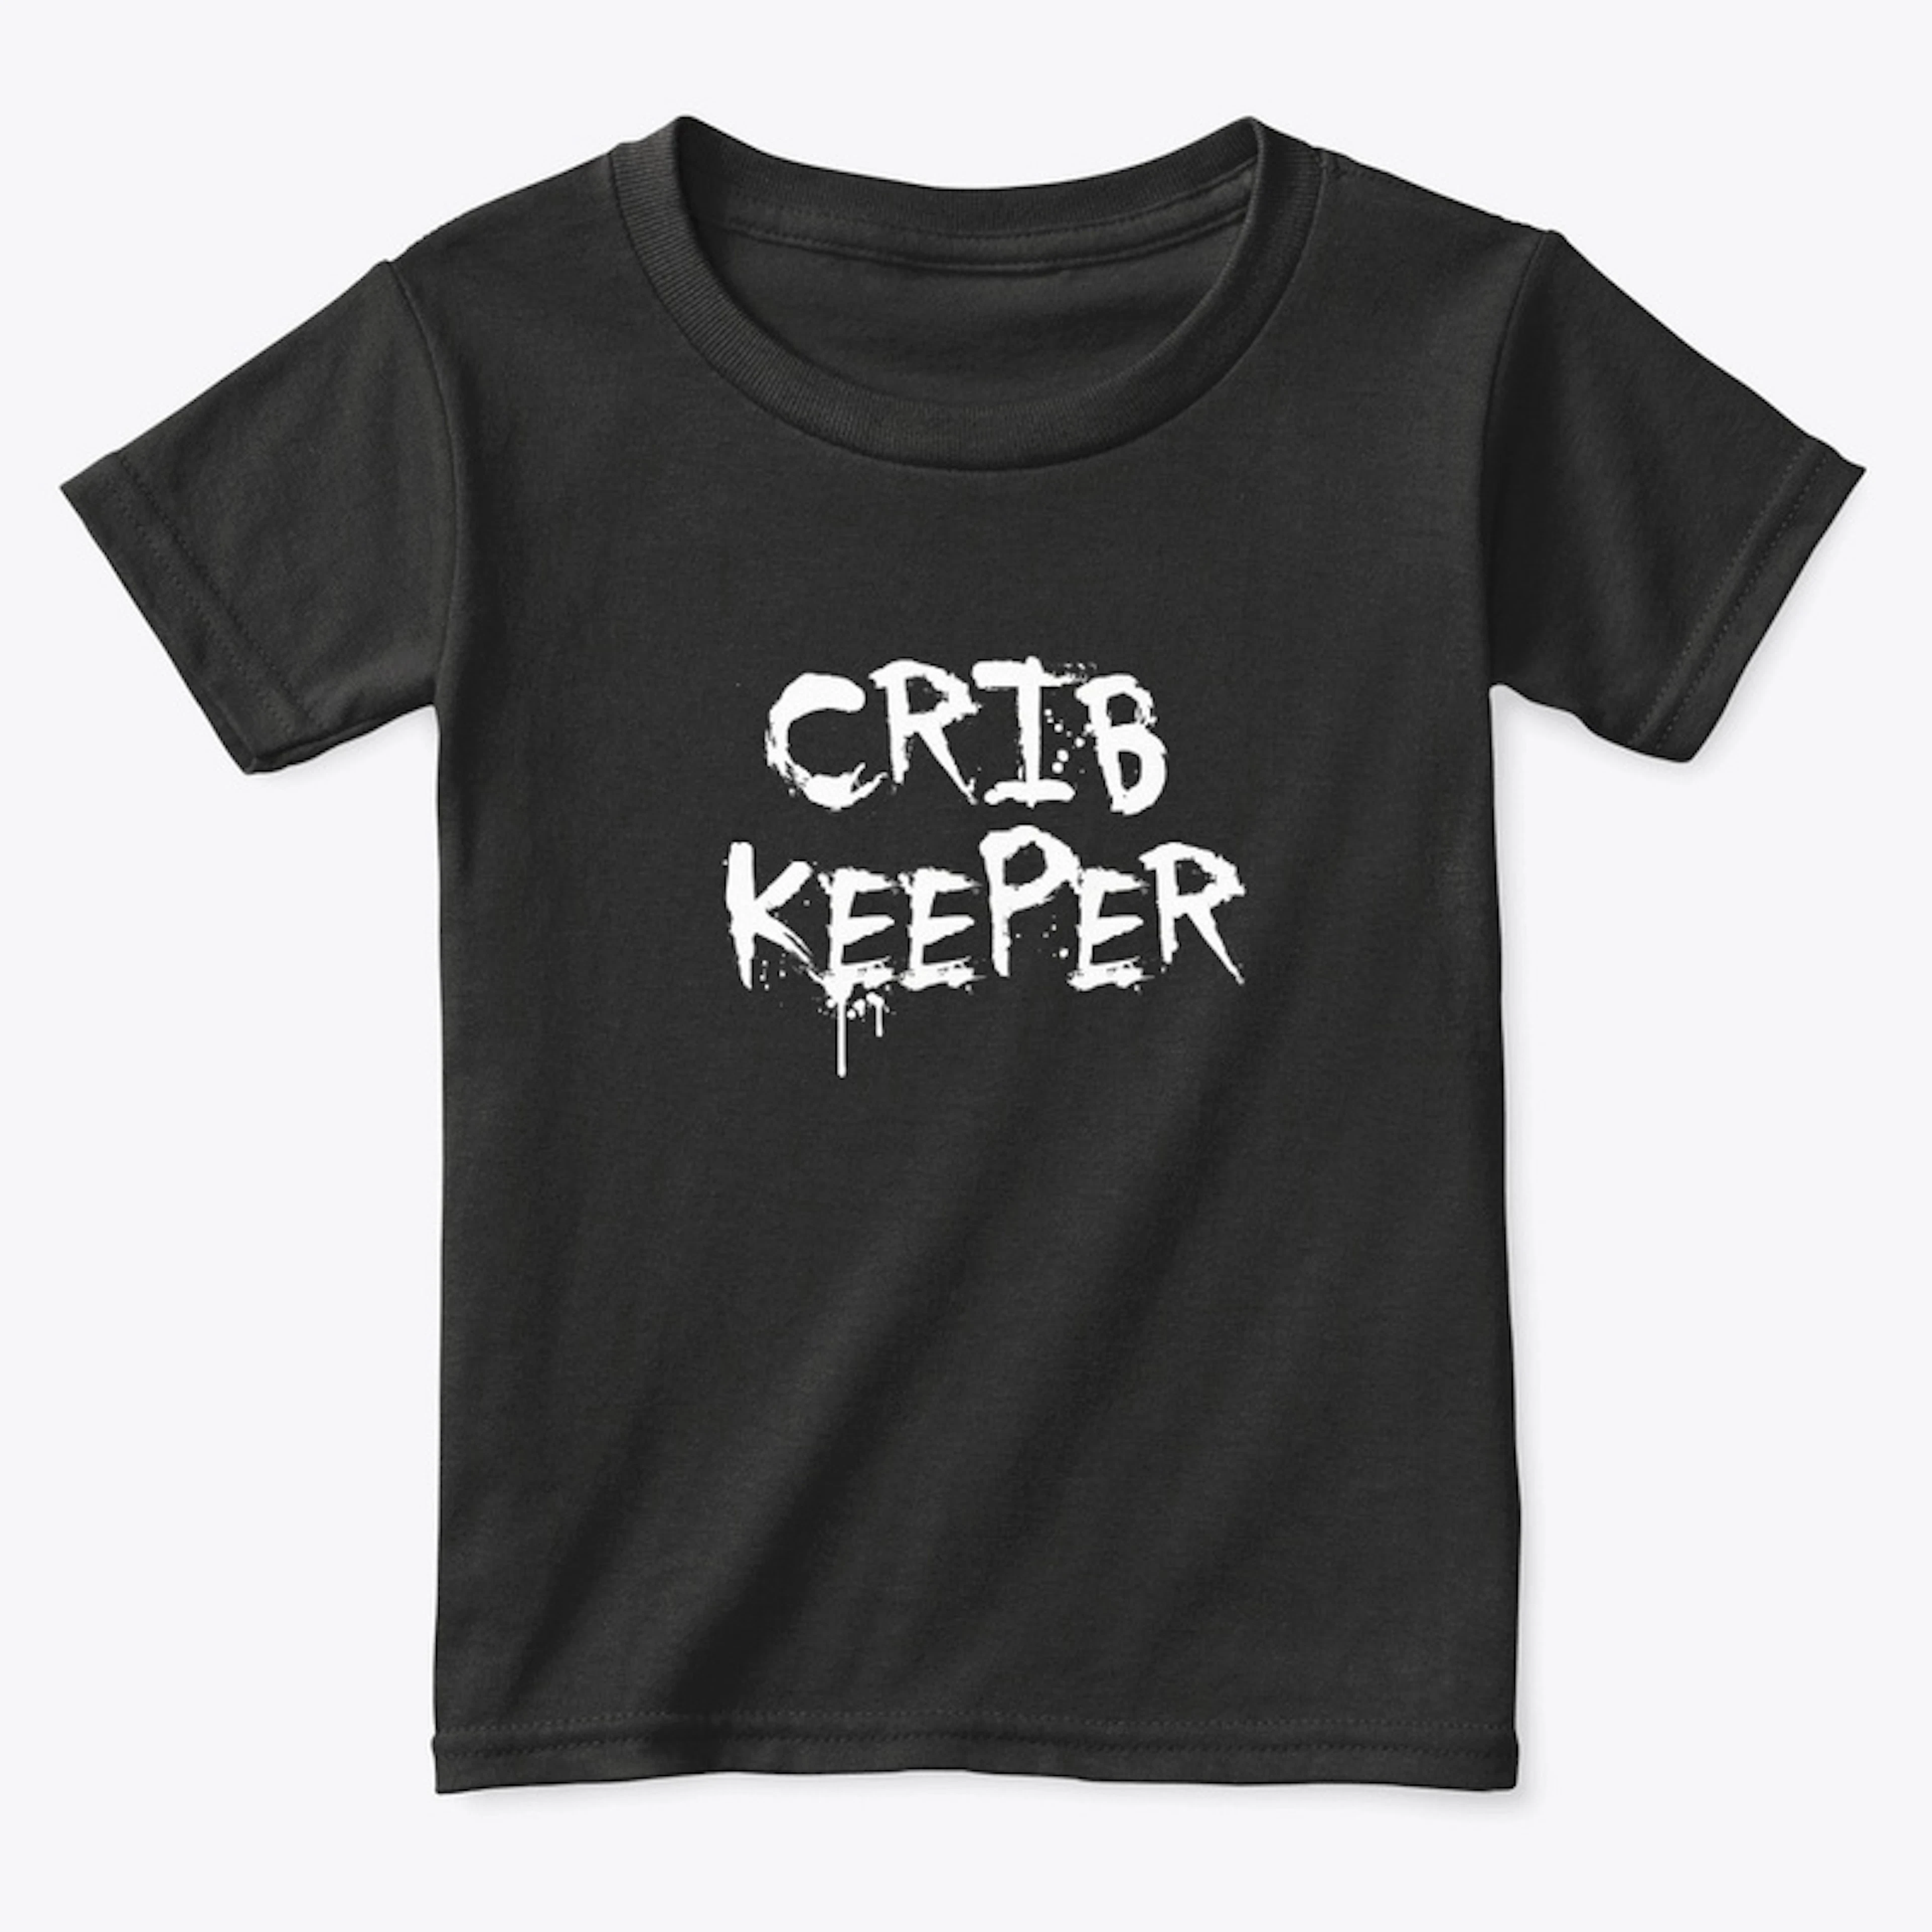 "Crib" Keeper Toddler's Tee